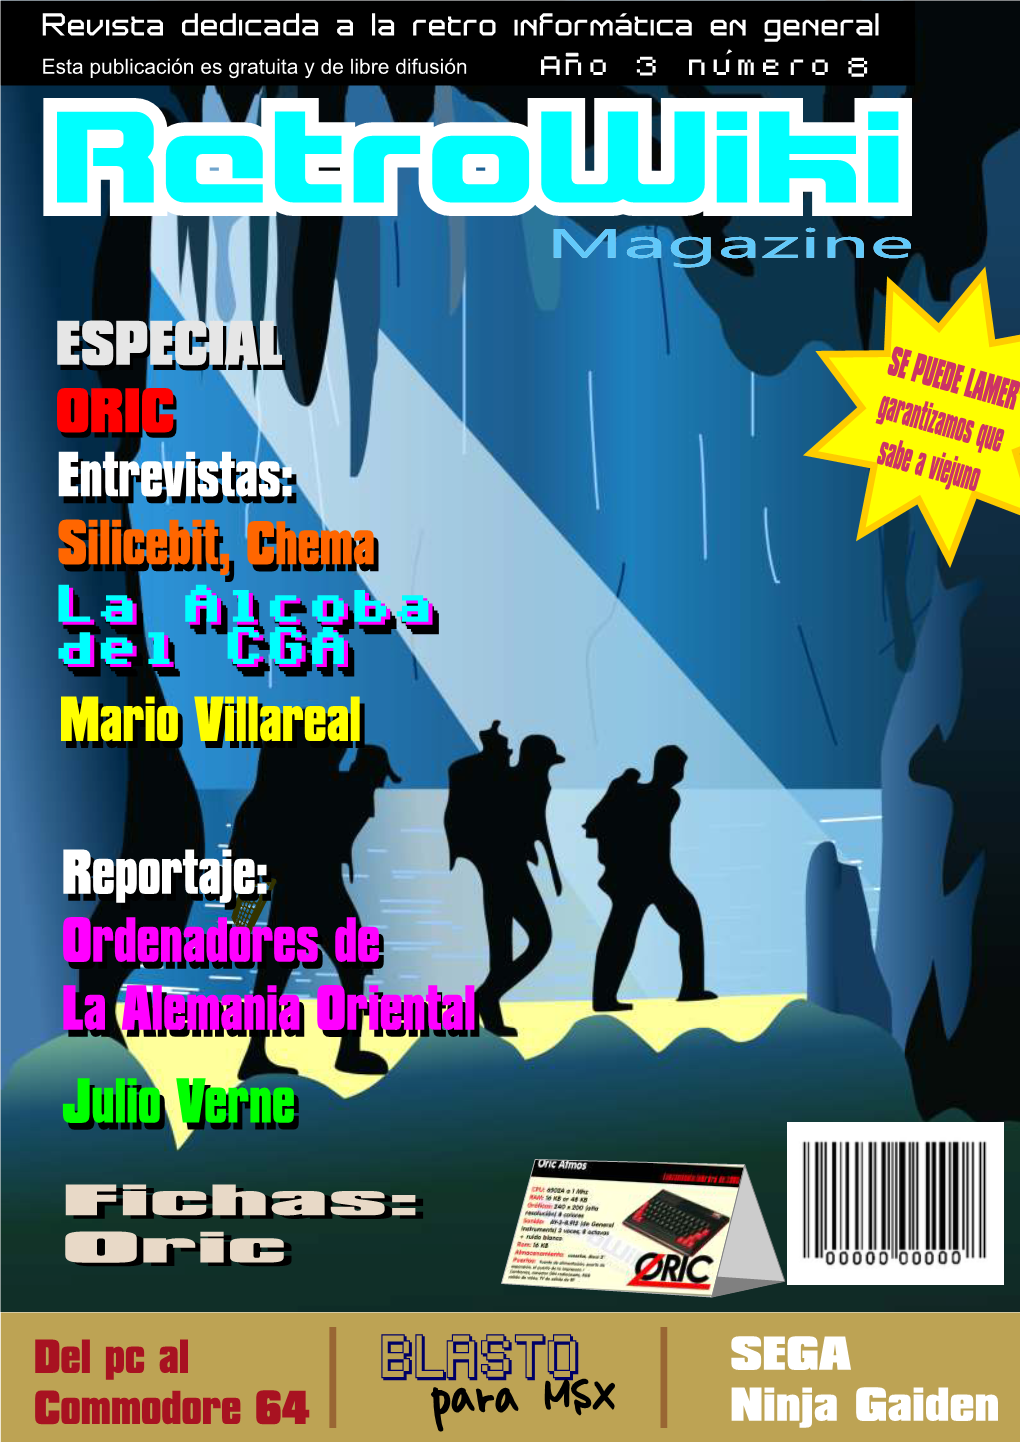 Retrowiki Magazine 8.Pdf